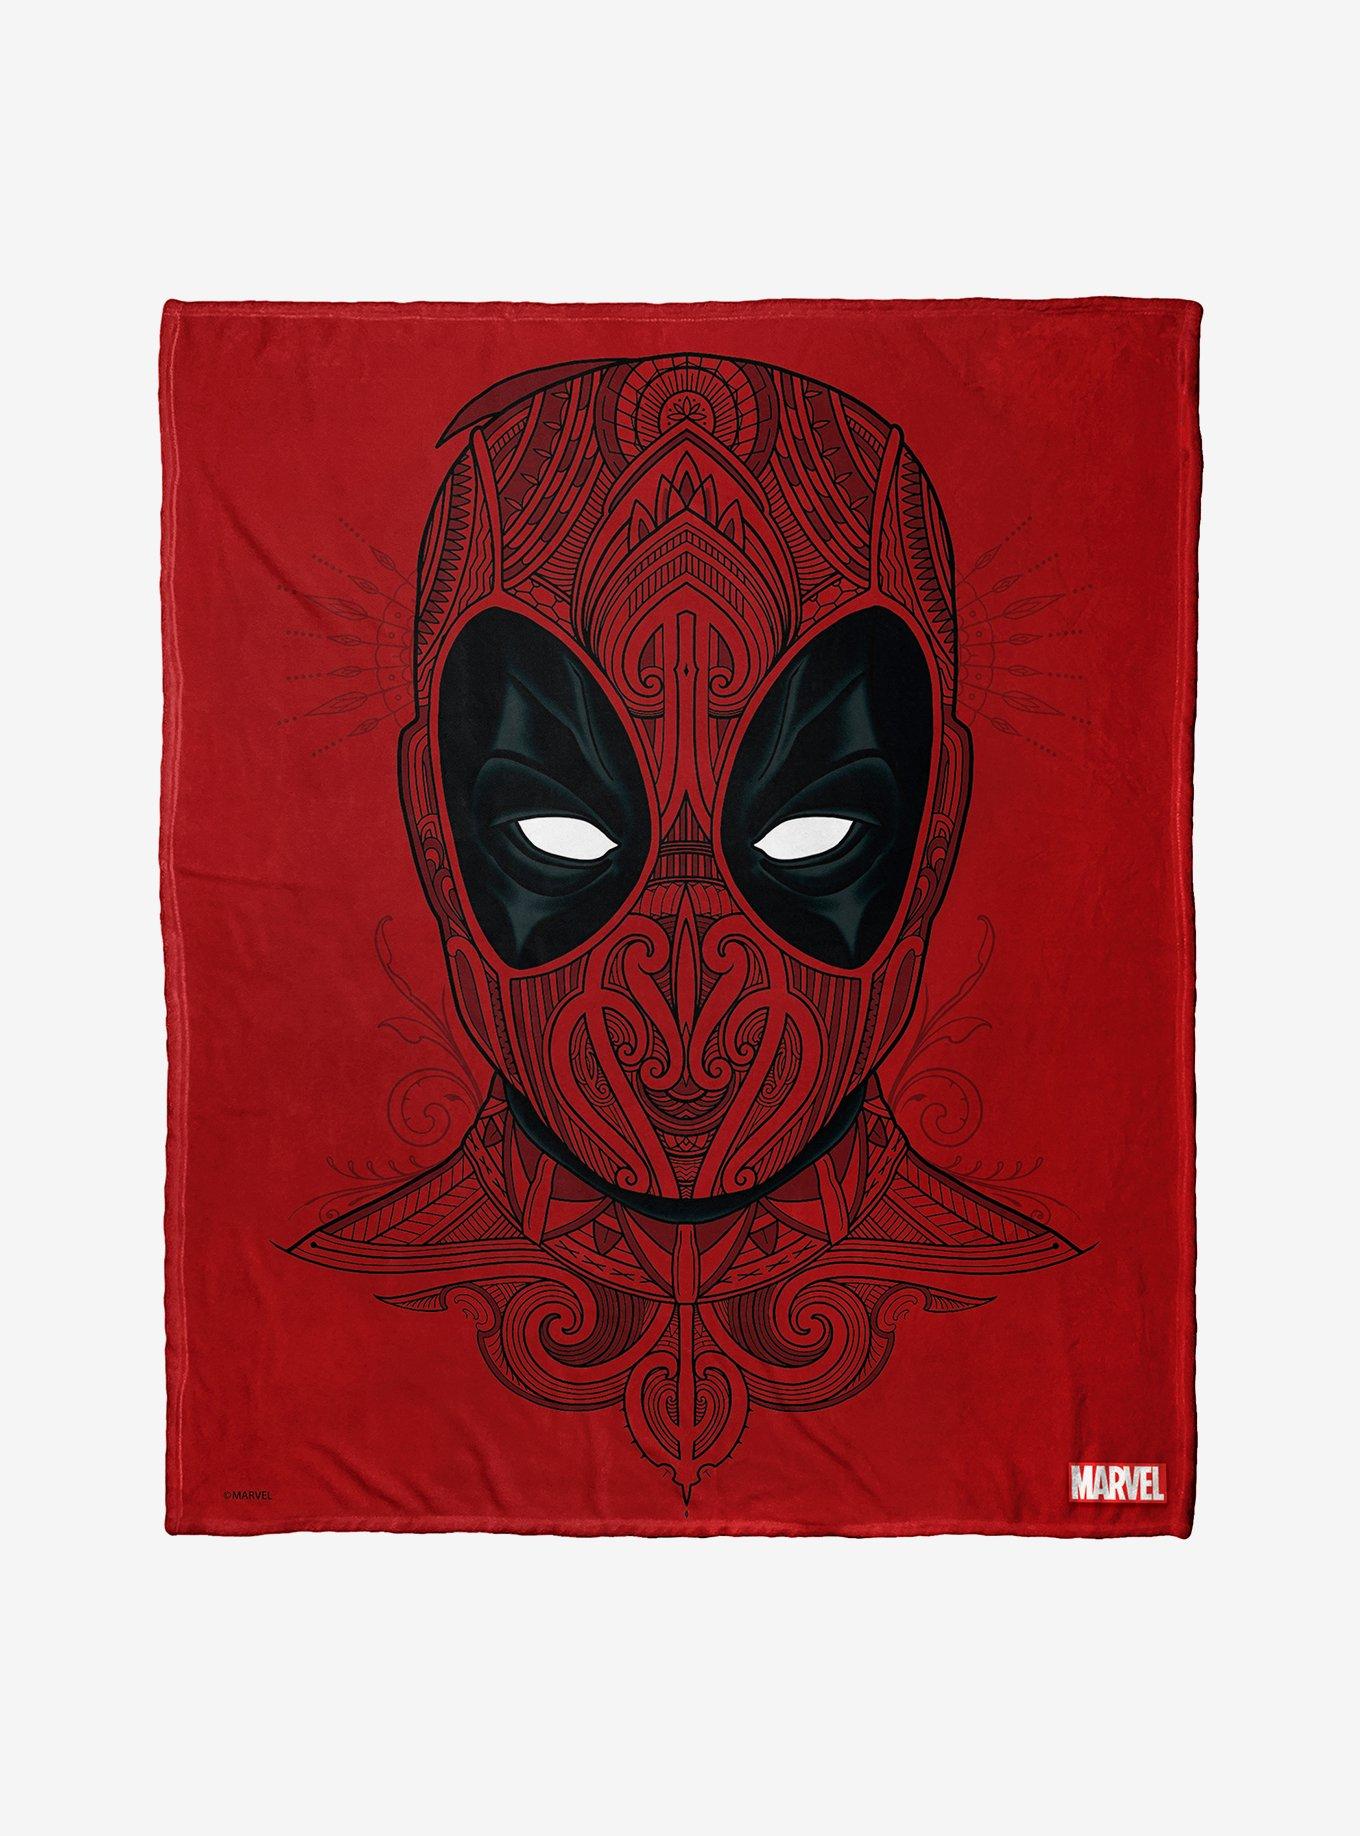 Marvel Deadpool Flourishing Deadpool Throw Blanket